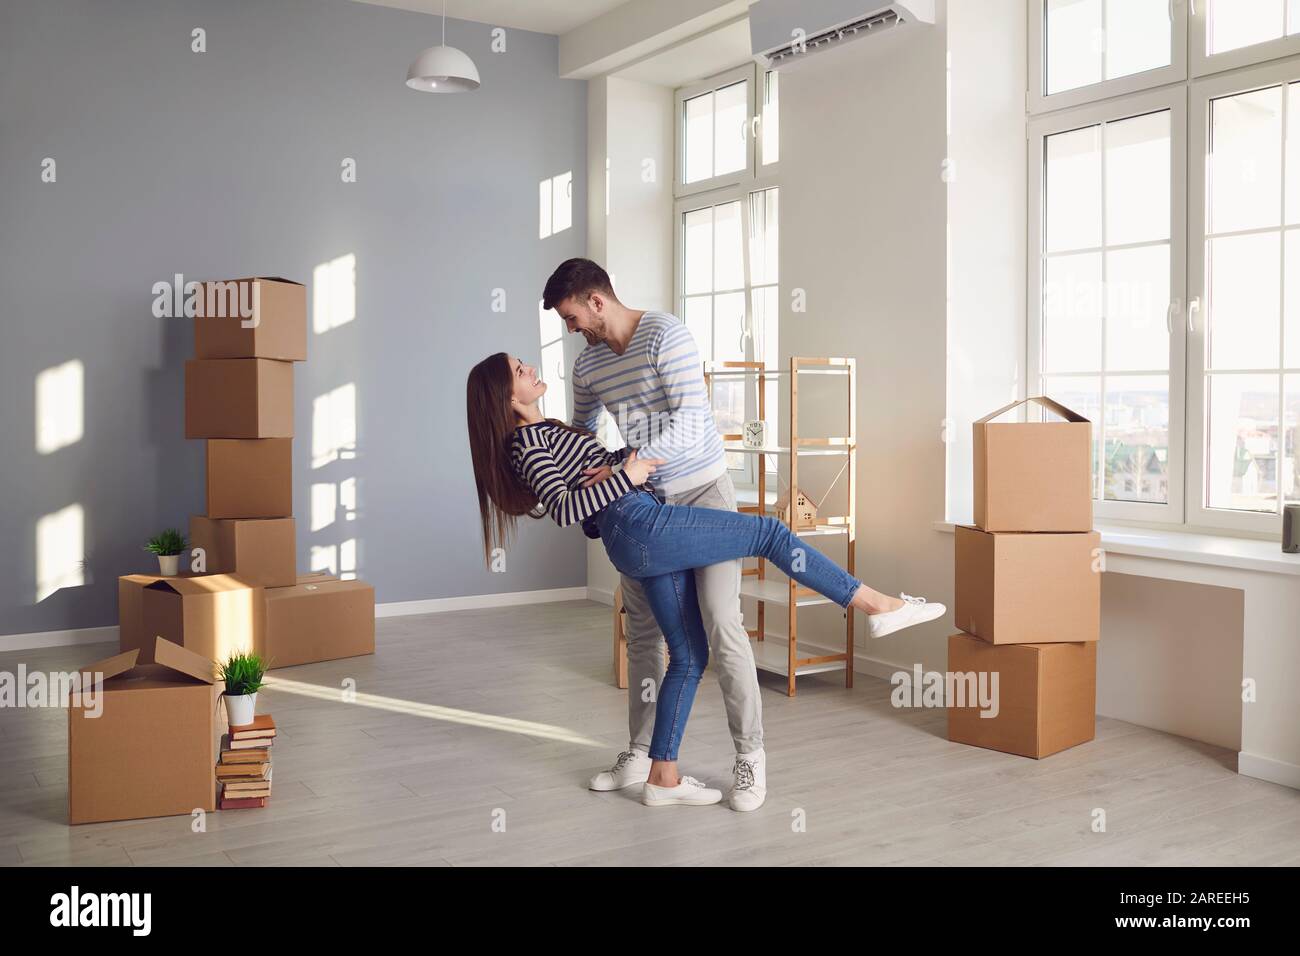 Ein fröhliches Paar spielt mit einem beweglichen Kasten in einem hellen Raum eines neuen Hauses. Stockfoto